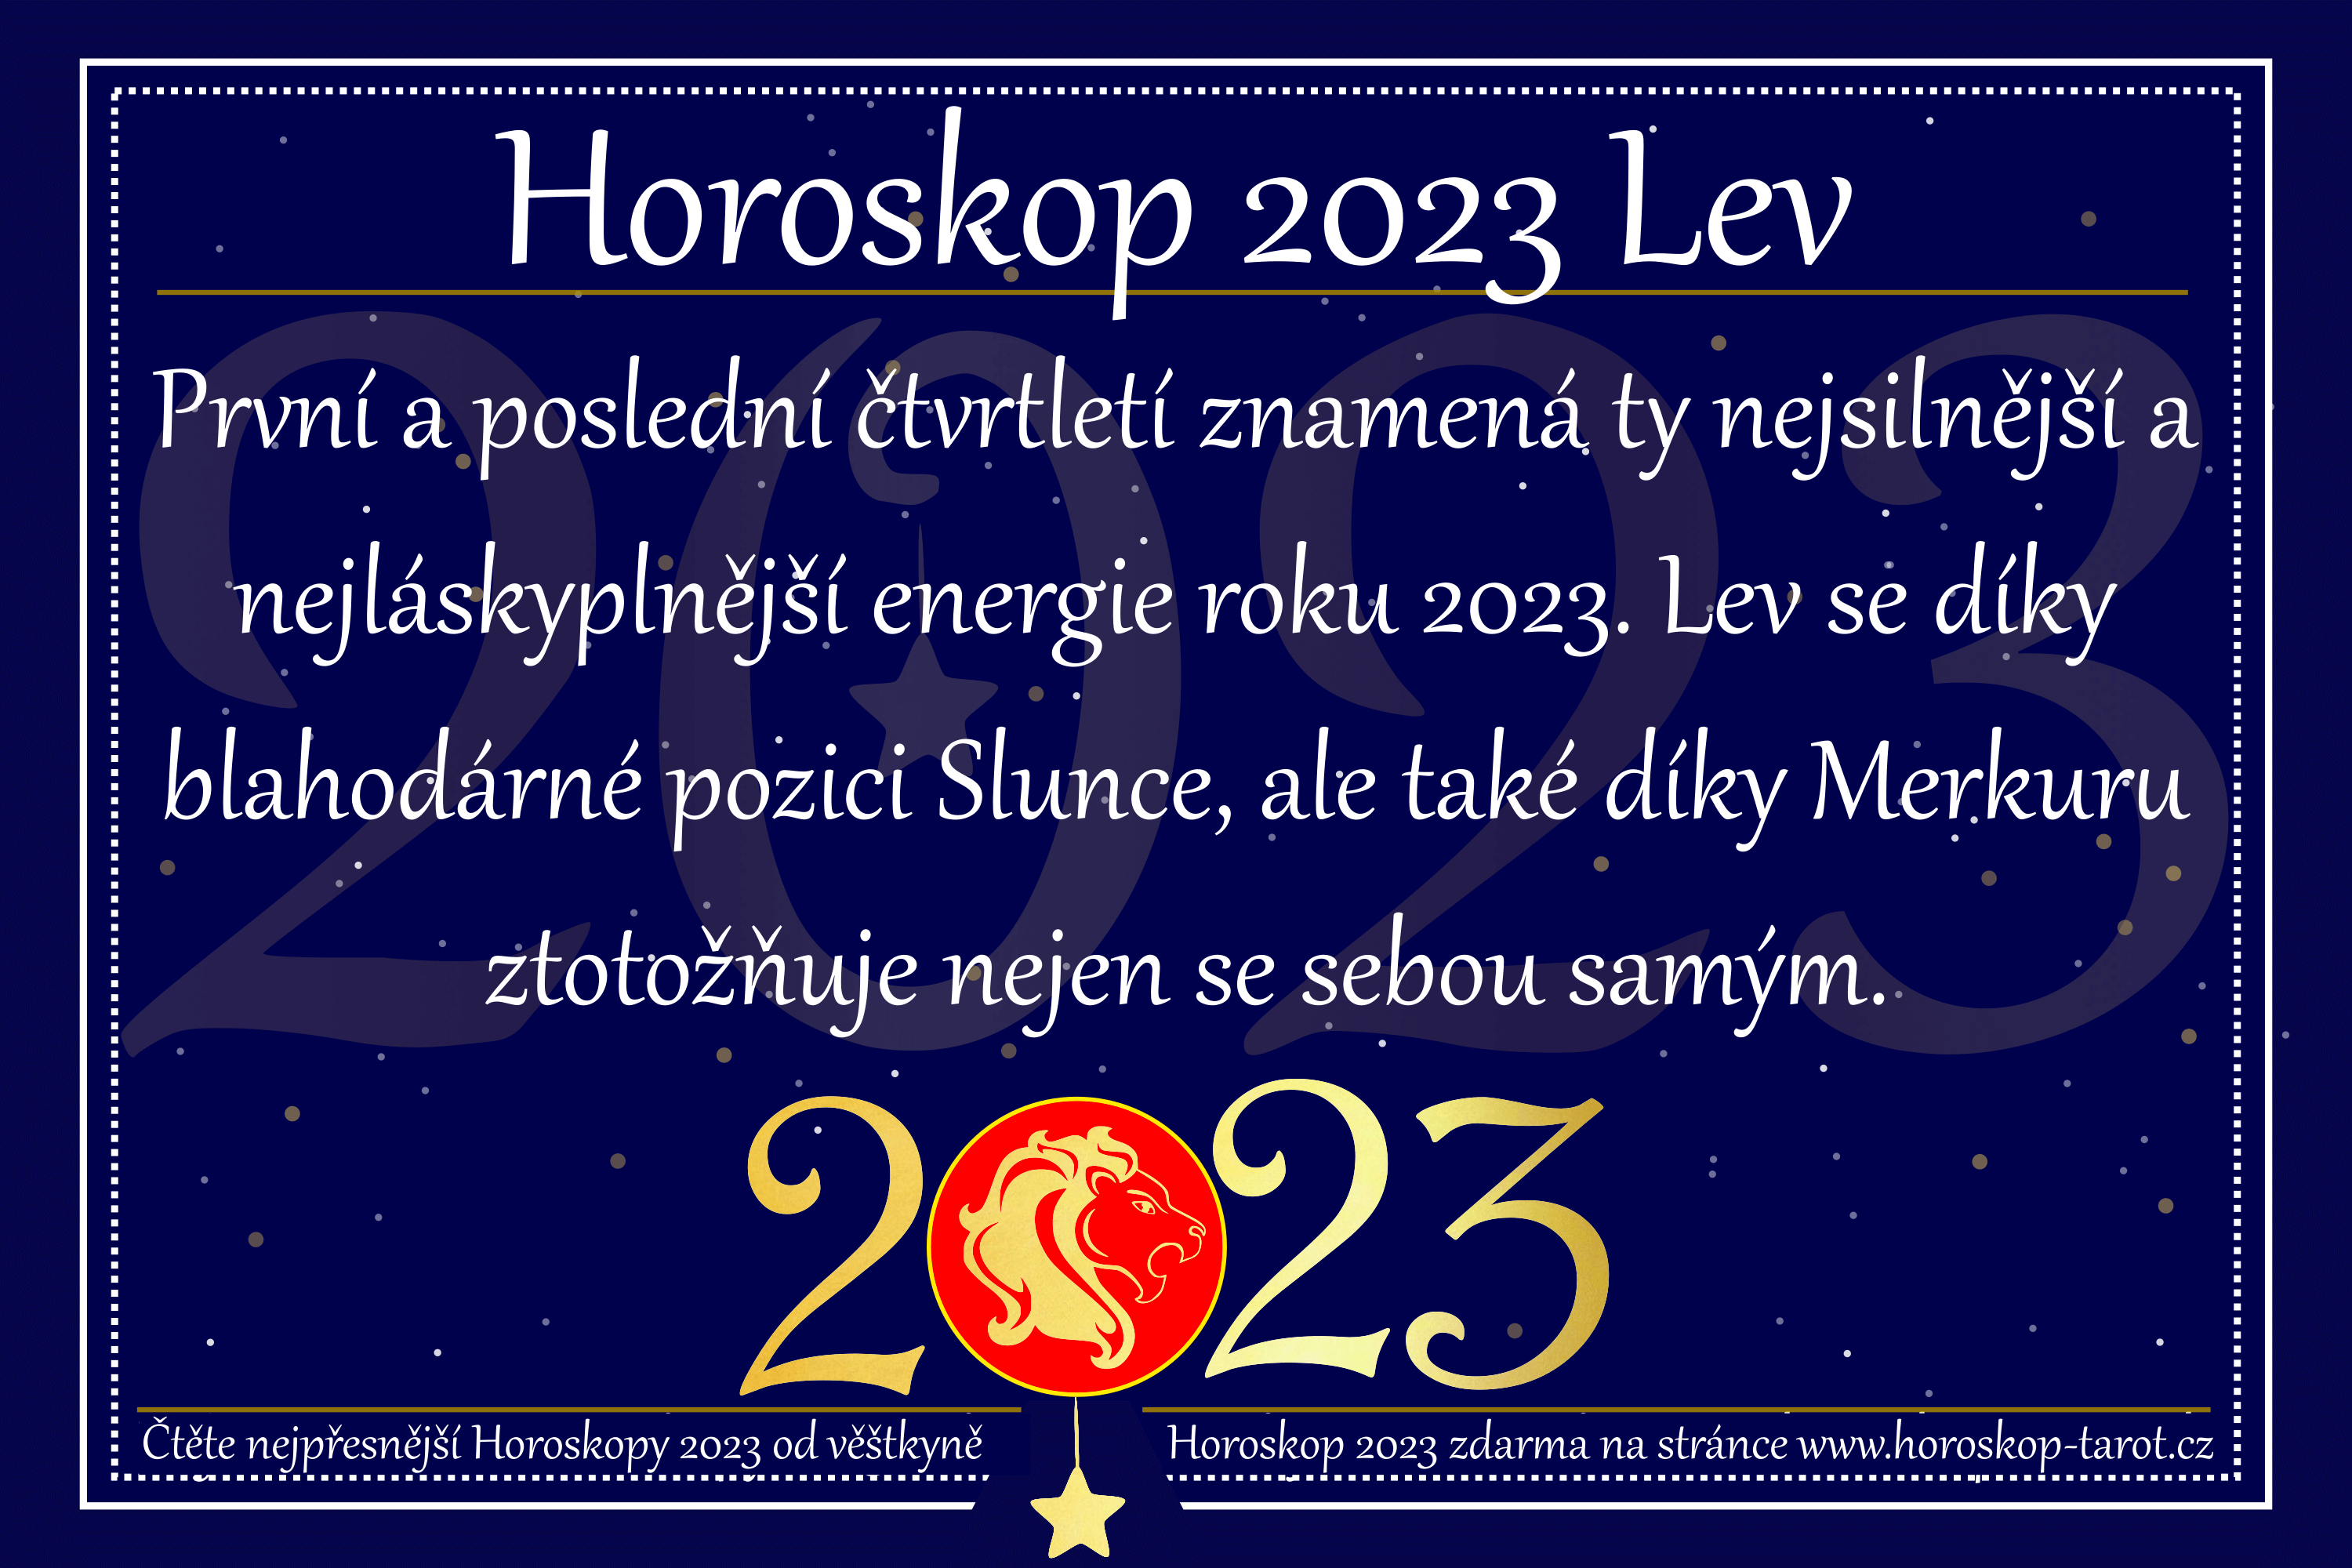 Horoskop 2023